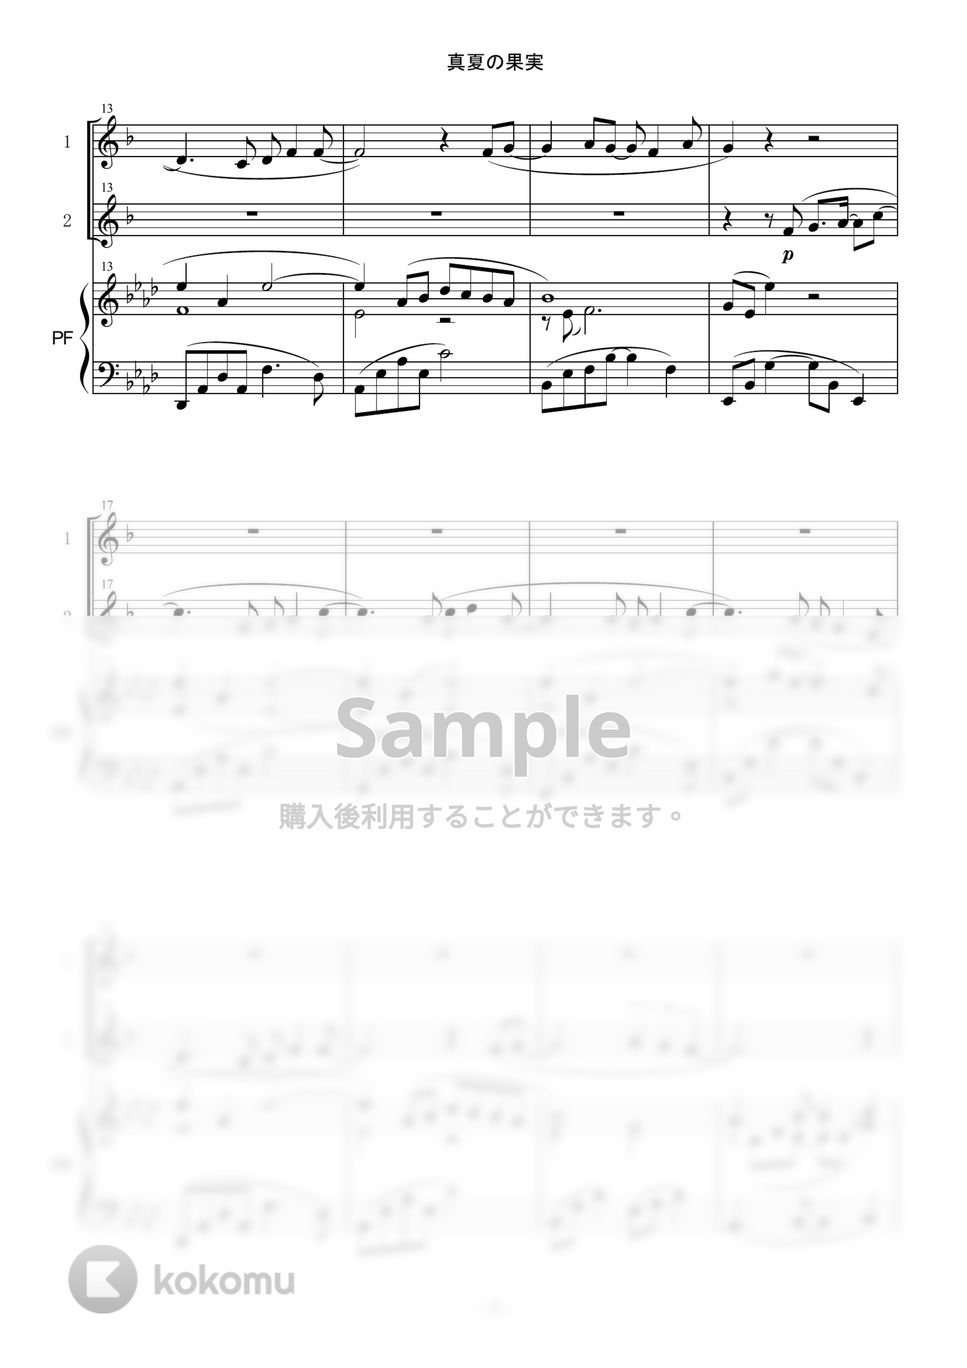 サザンオールスターズ - 真夏の果実 (in E♭/デュオ/アルトサックス/ピアノ伴奏) by enorisa